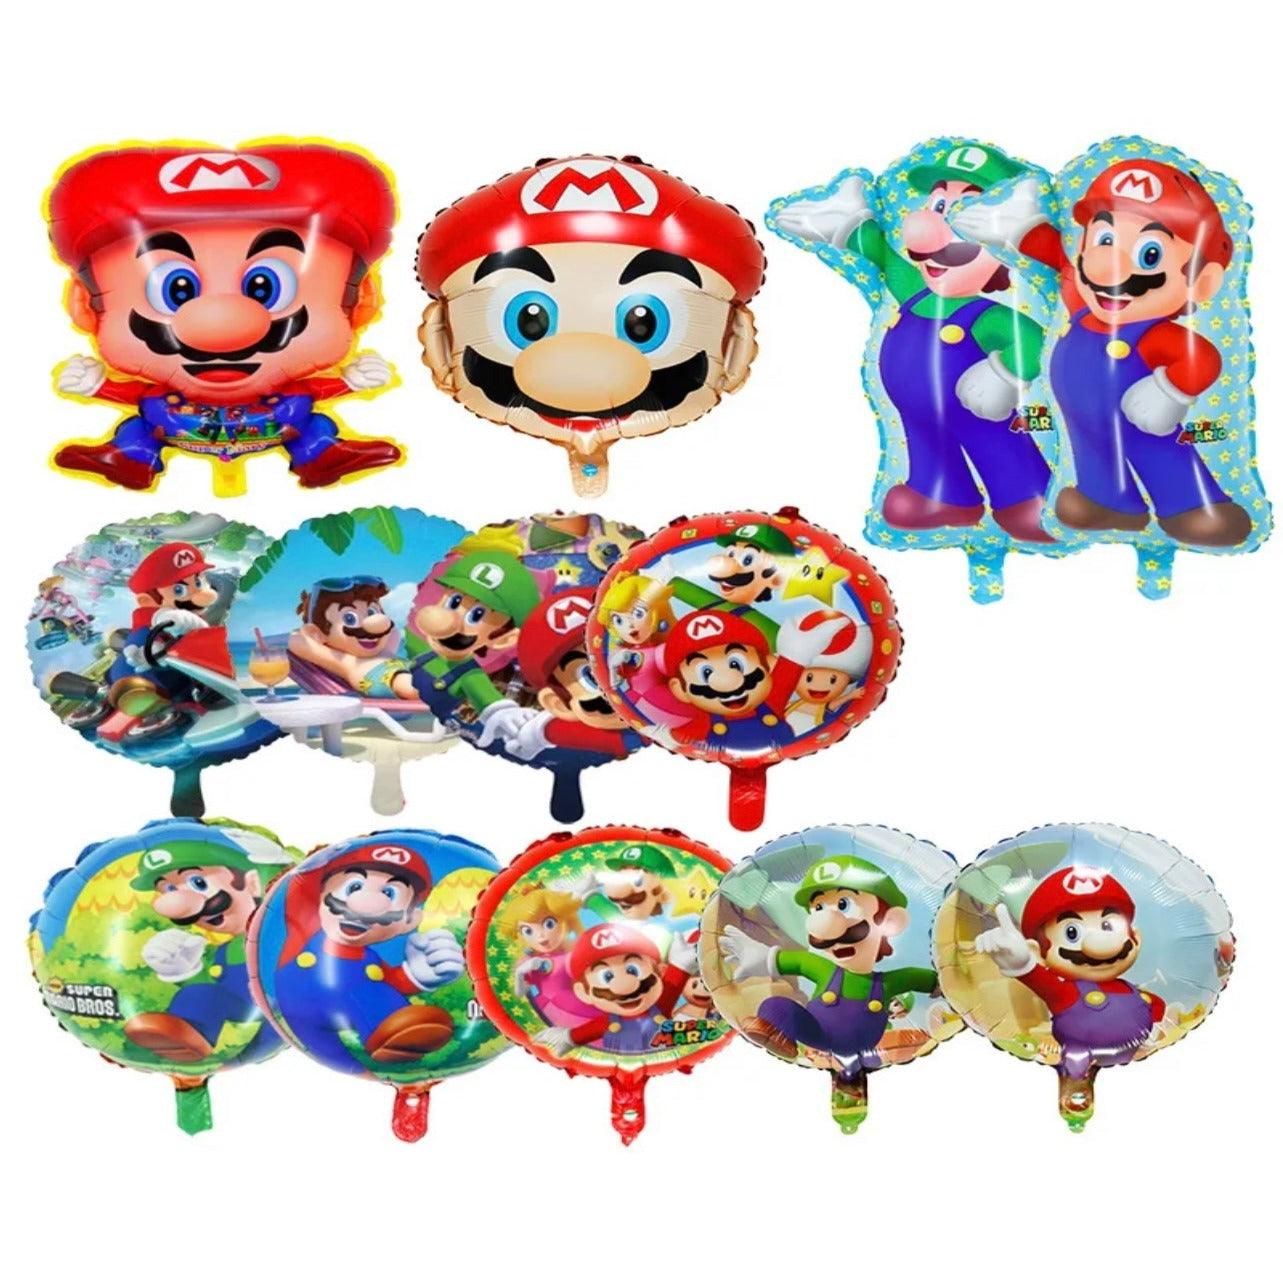 Mario & Luigi Balloons - Expat Life Style